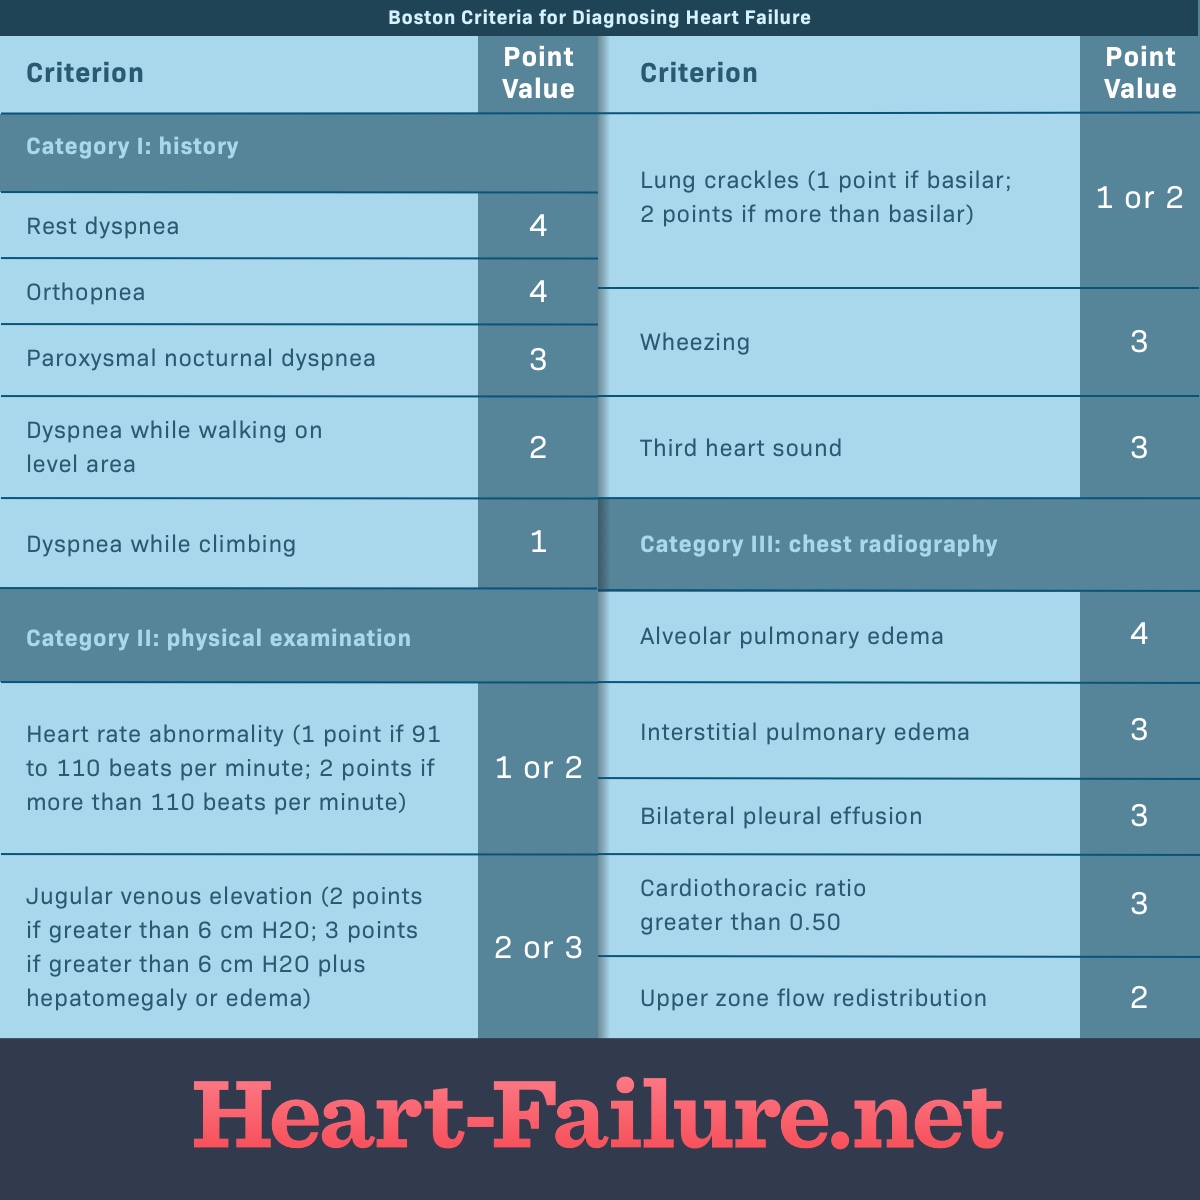 Boston criteria for diagnosing heart failure